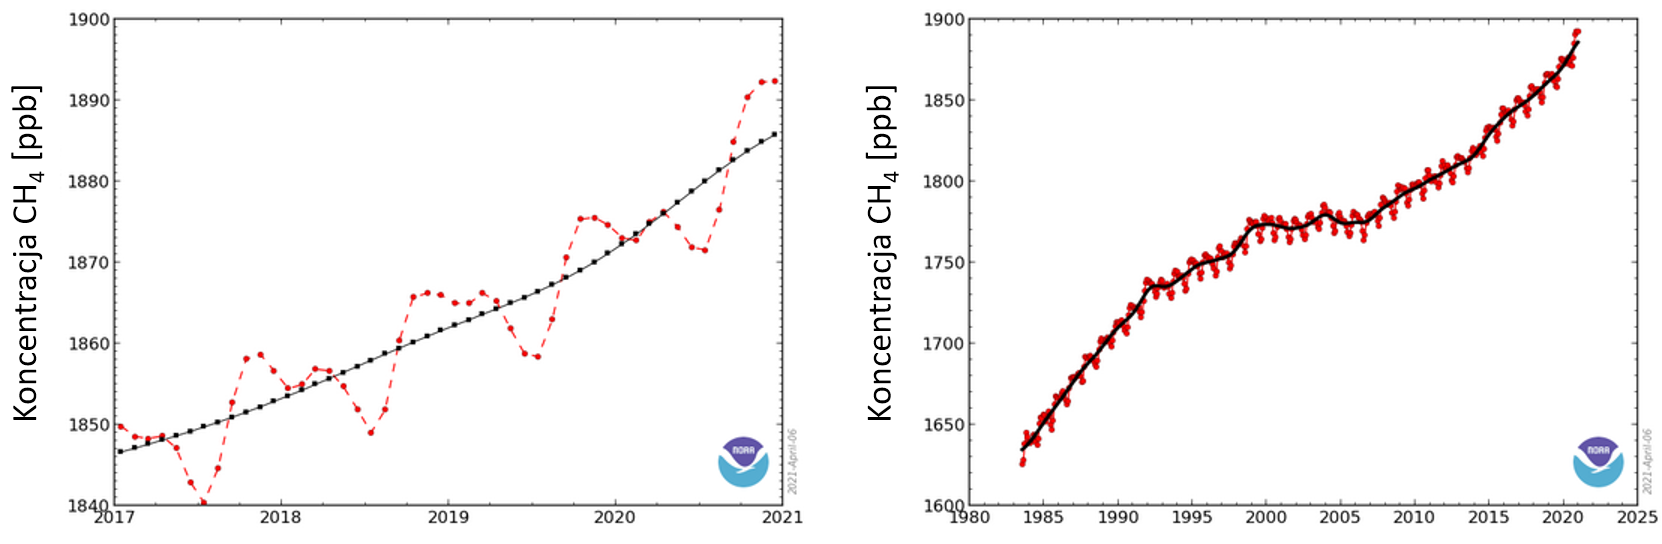 Wykresy: koncentracje metanu w ostatnich latach. Widać wieloletni wzrost (z zahamowaniem na przełomie wieków) i roczne oscylacje. 